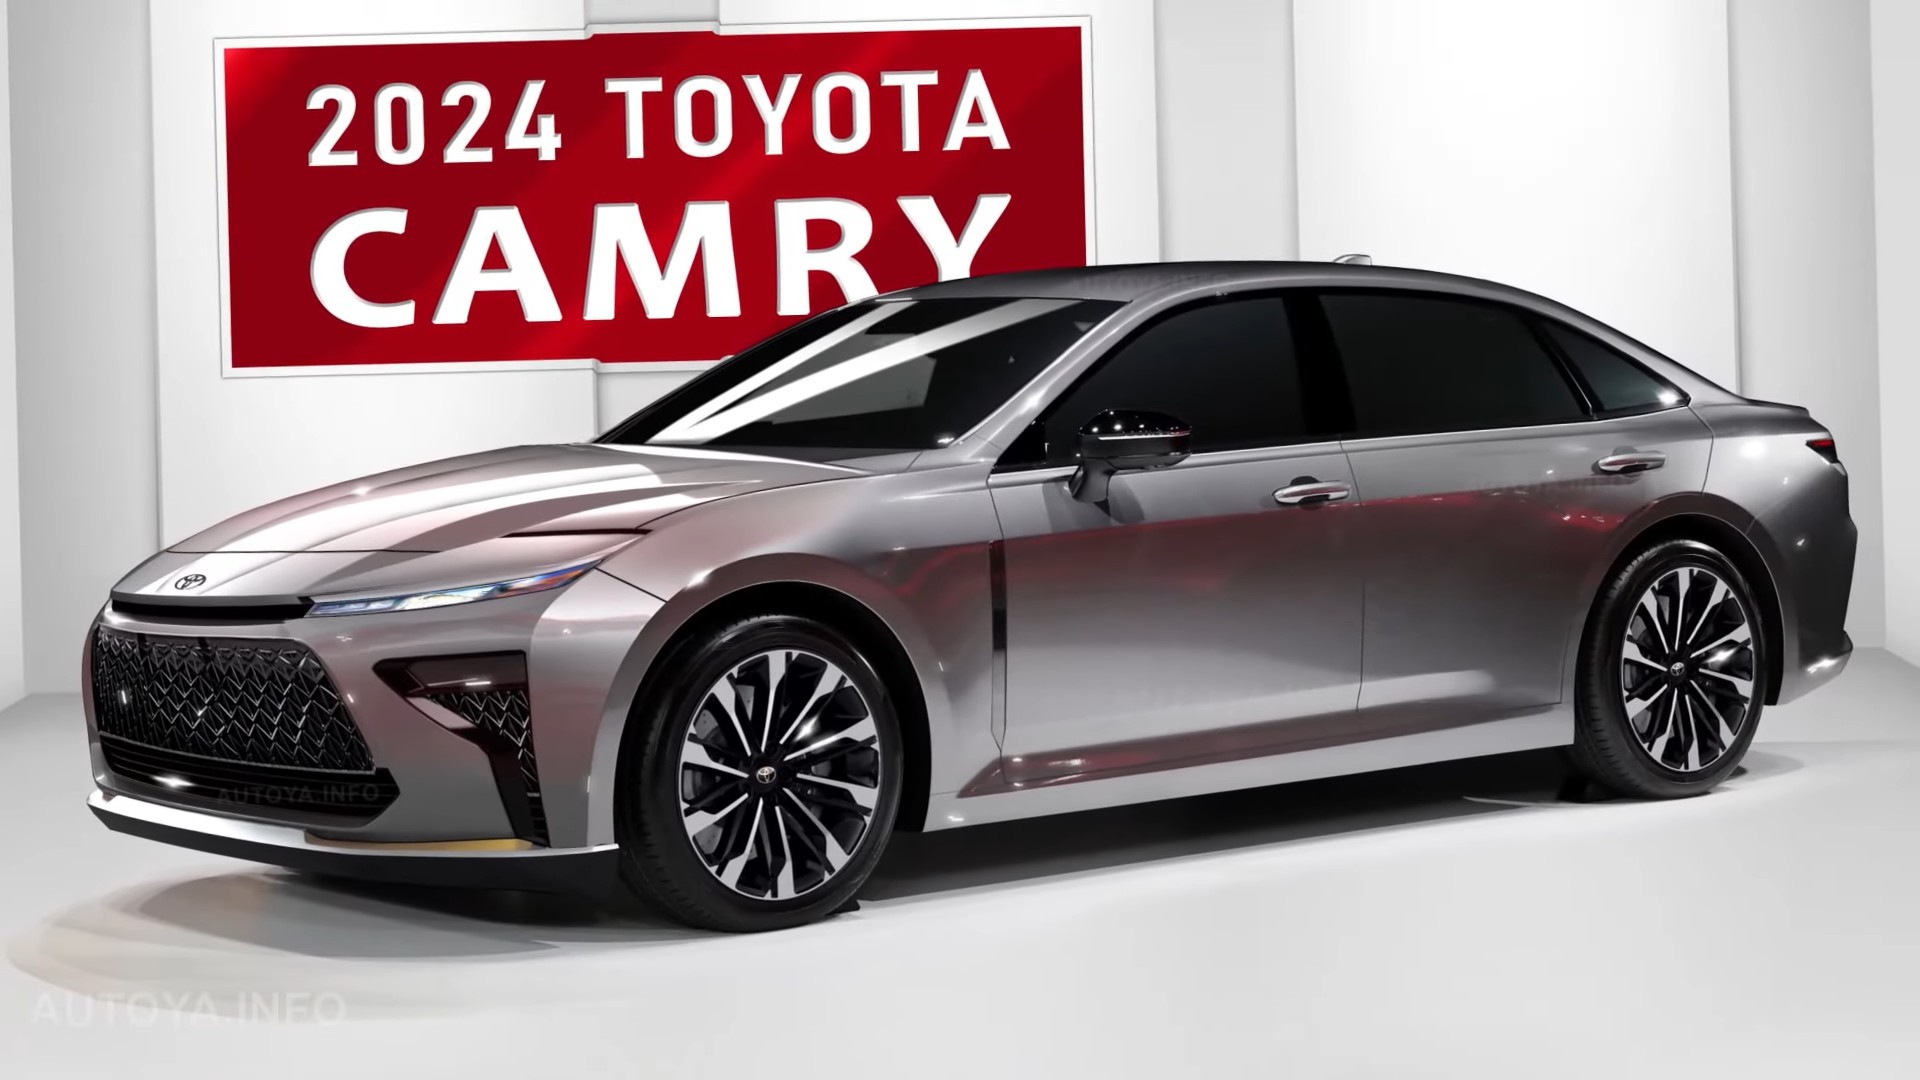 الشكل الجديد للسيارة الأكثر فخامة وجاذبية... تعرف على كل ما يحض سيارة تويوتا كامري 2024 الشكل